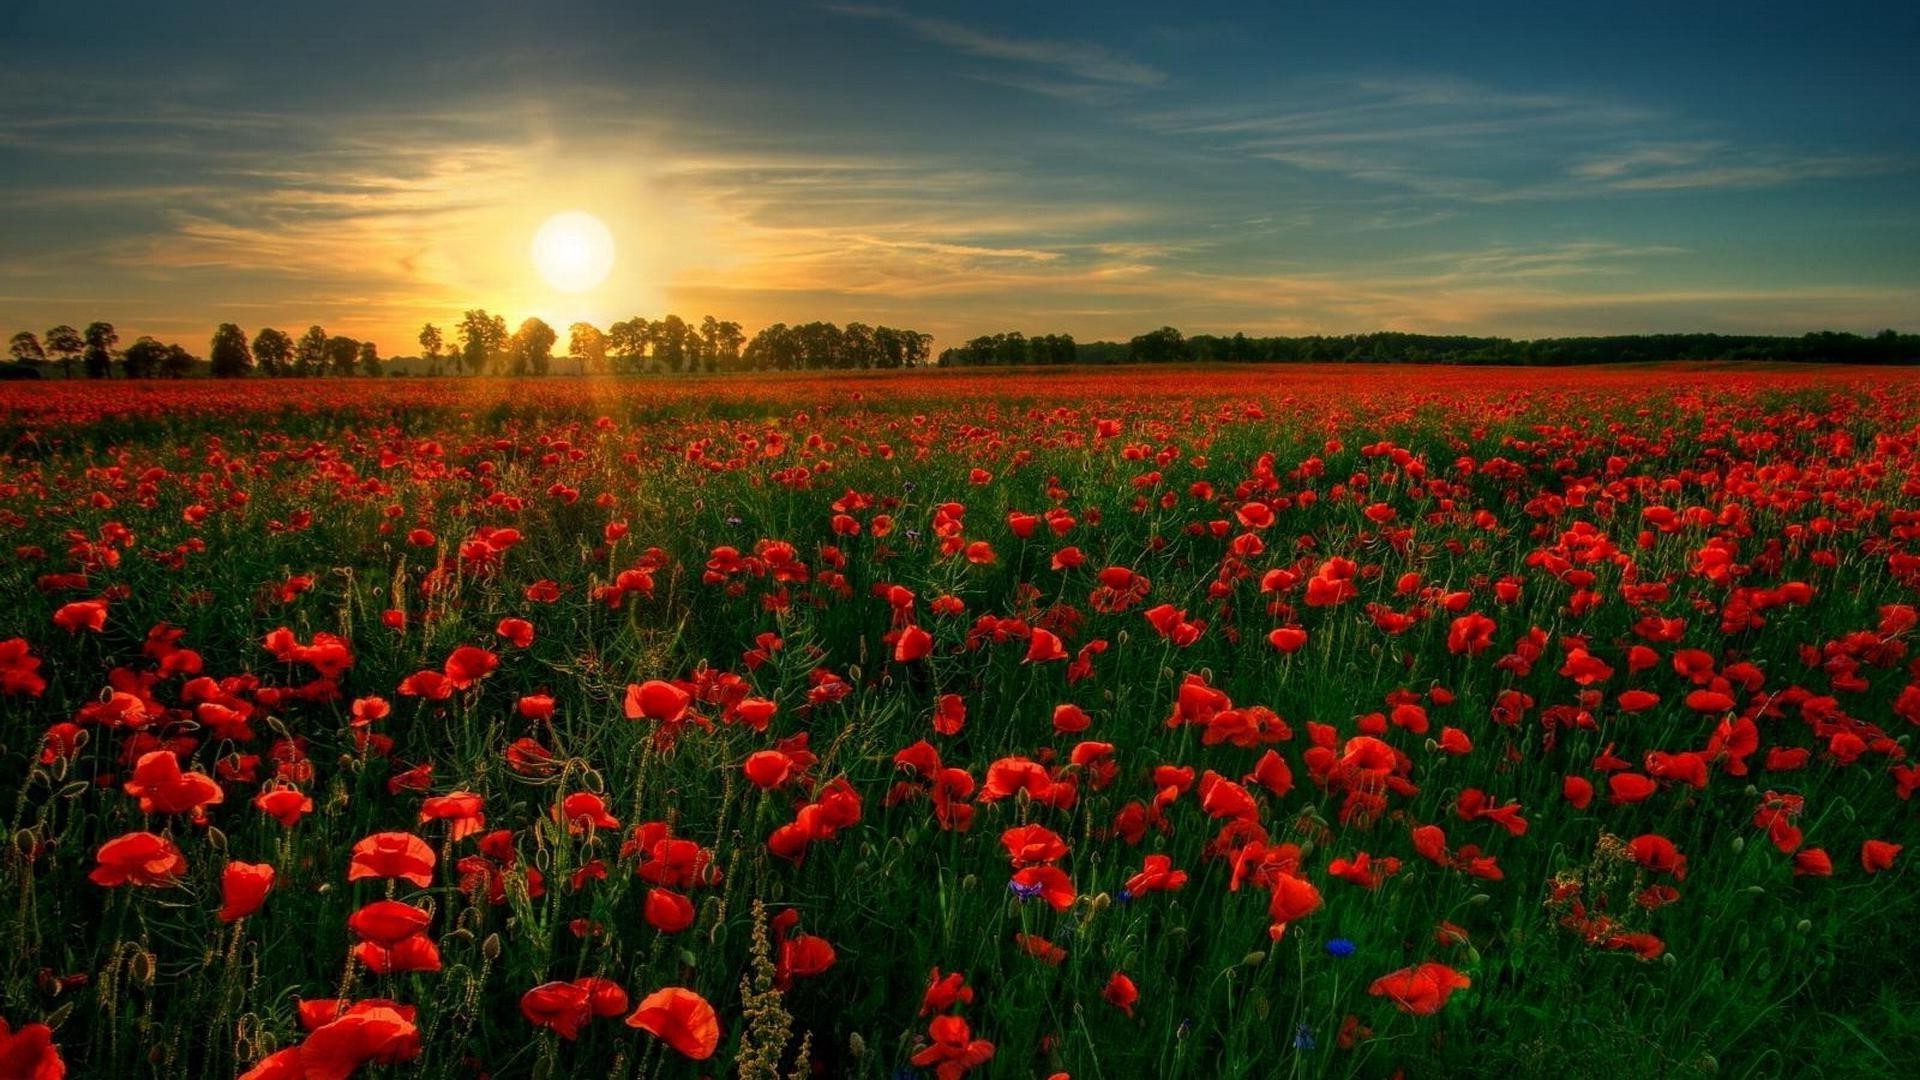 закат и рассвет цветок поппи поле сенокос природа флора сельских цвет на открытом воздухе сельское хозяйство пейзаж лето цветочные яркий рост солнце